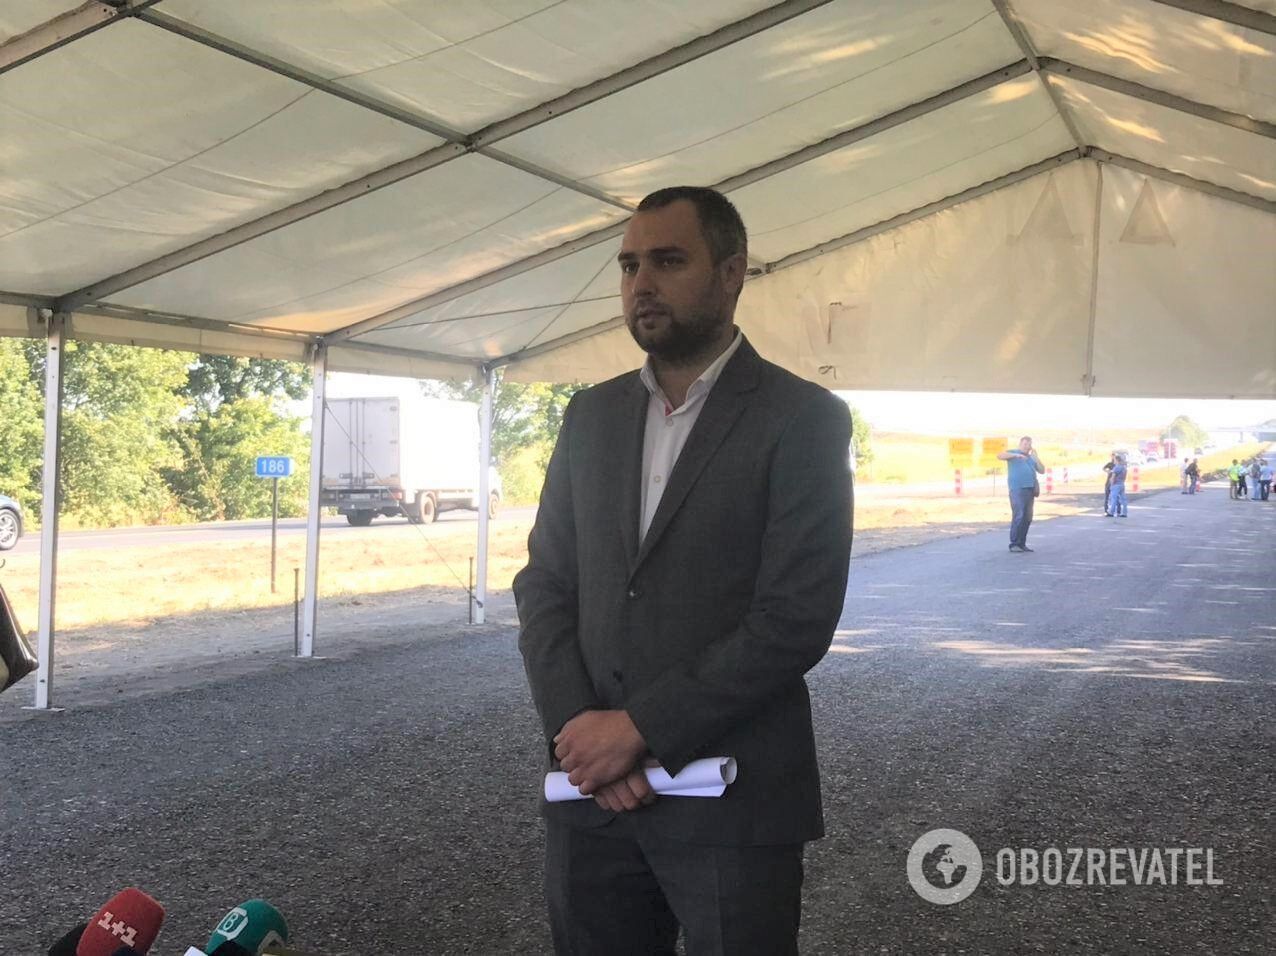 Начальник службы автодорог в Днепропетровской области Дмитрий Чумаченко рассказал о масштабных ремонтах